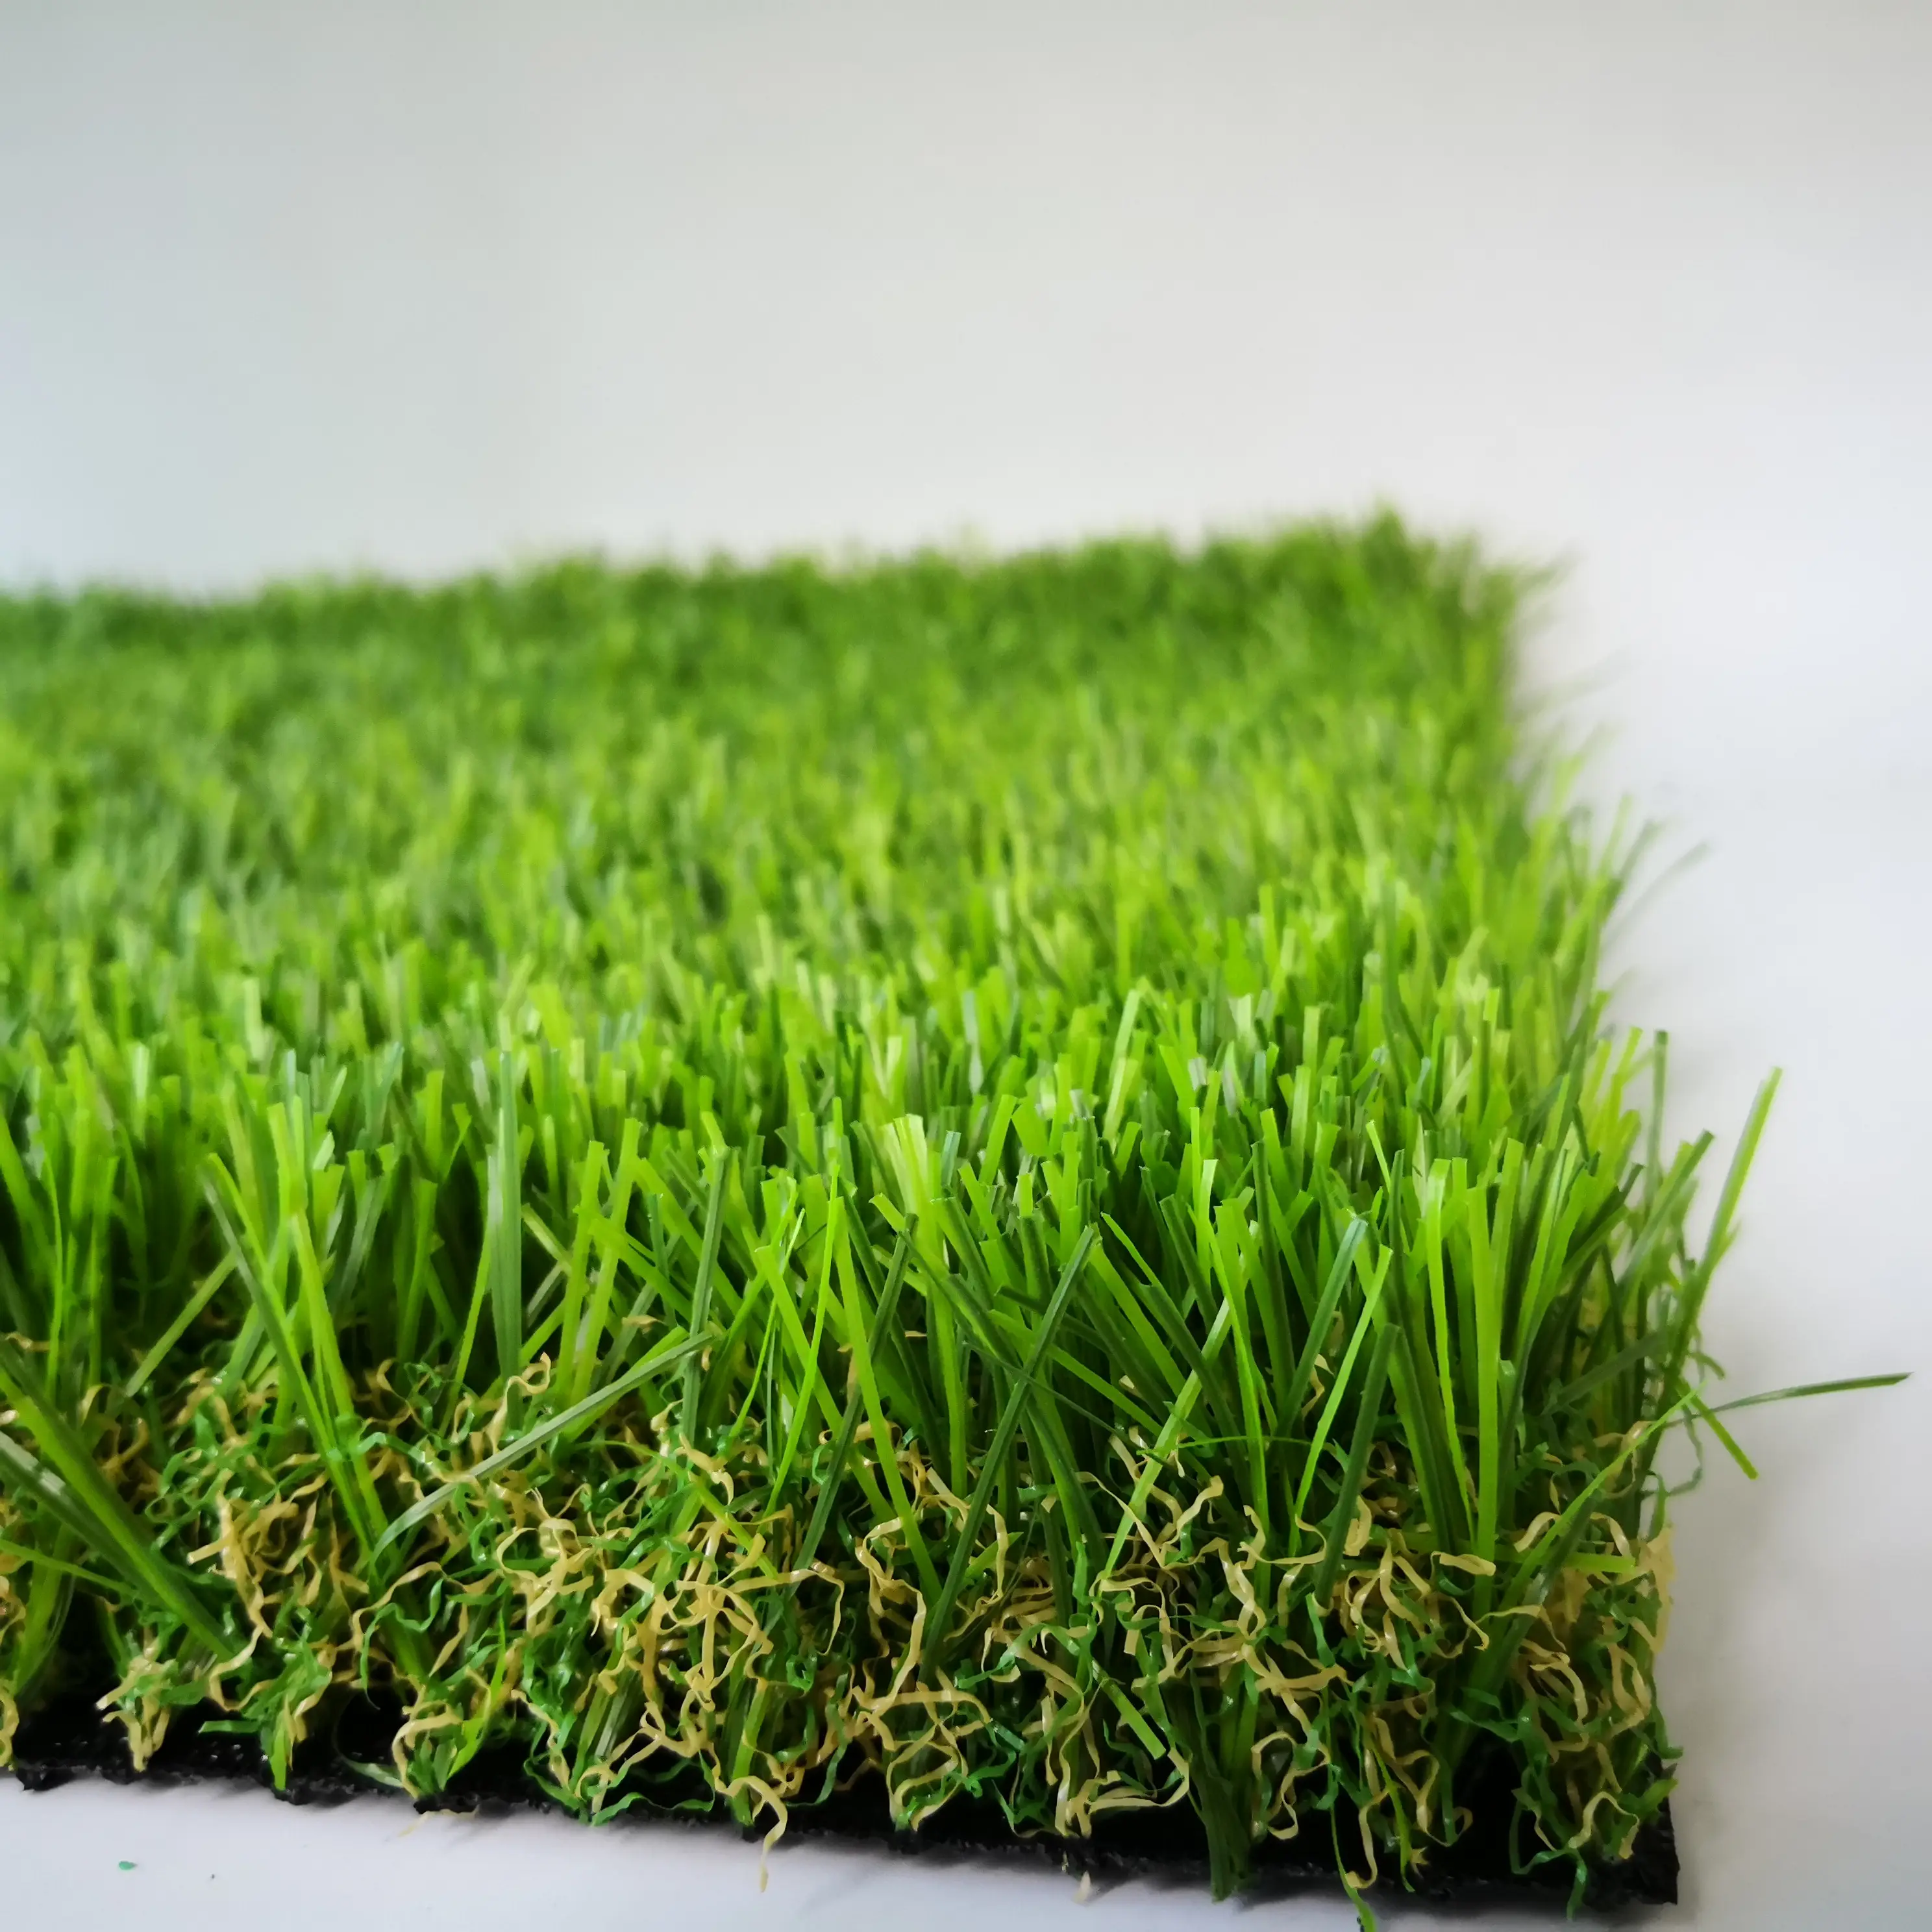 Новые идеи для продуктов, дешевая искусственная трава, ковер, пластиковая трава для сада, ландшафтного дизайна и украшения дома